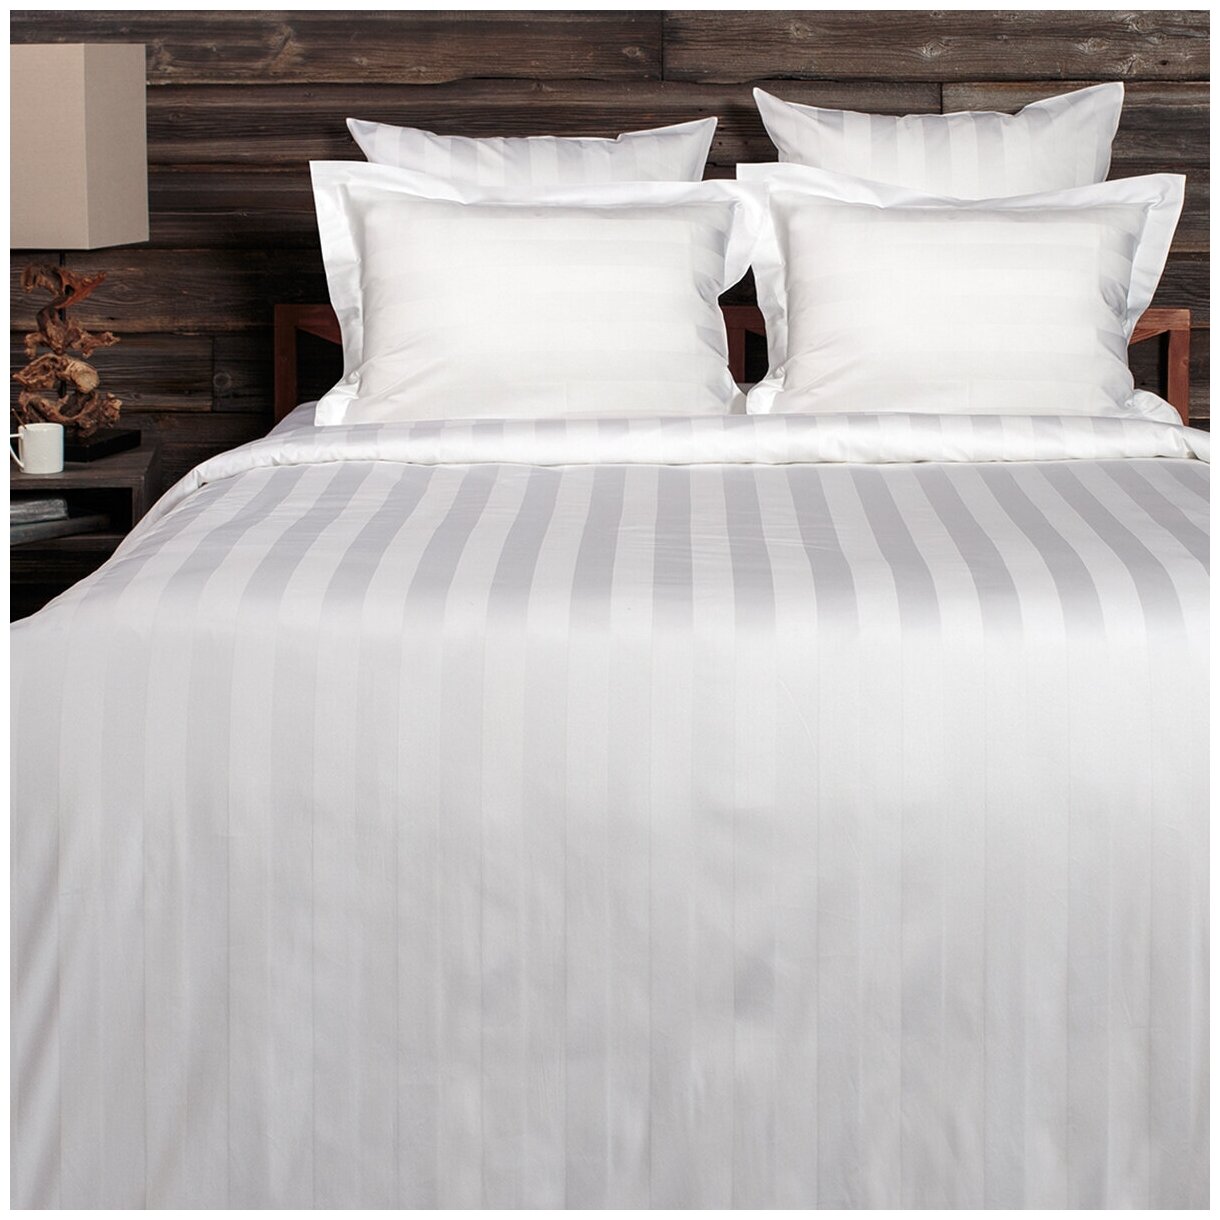 Комплект постельного белья La Prima постельное бельё мако-сатин белоснежный, размер 1.5 спальный (145x215см)